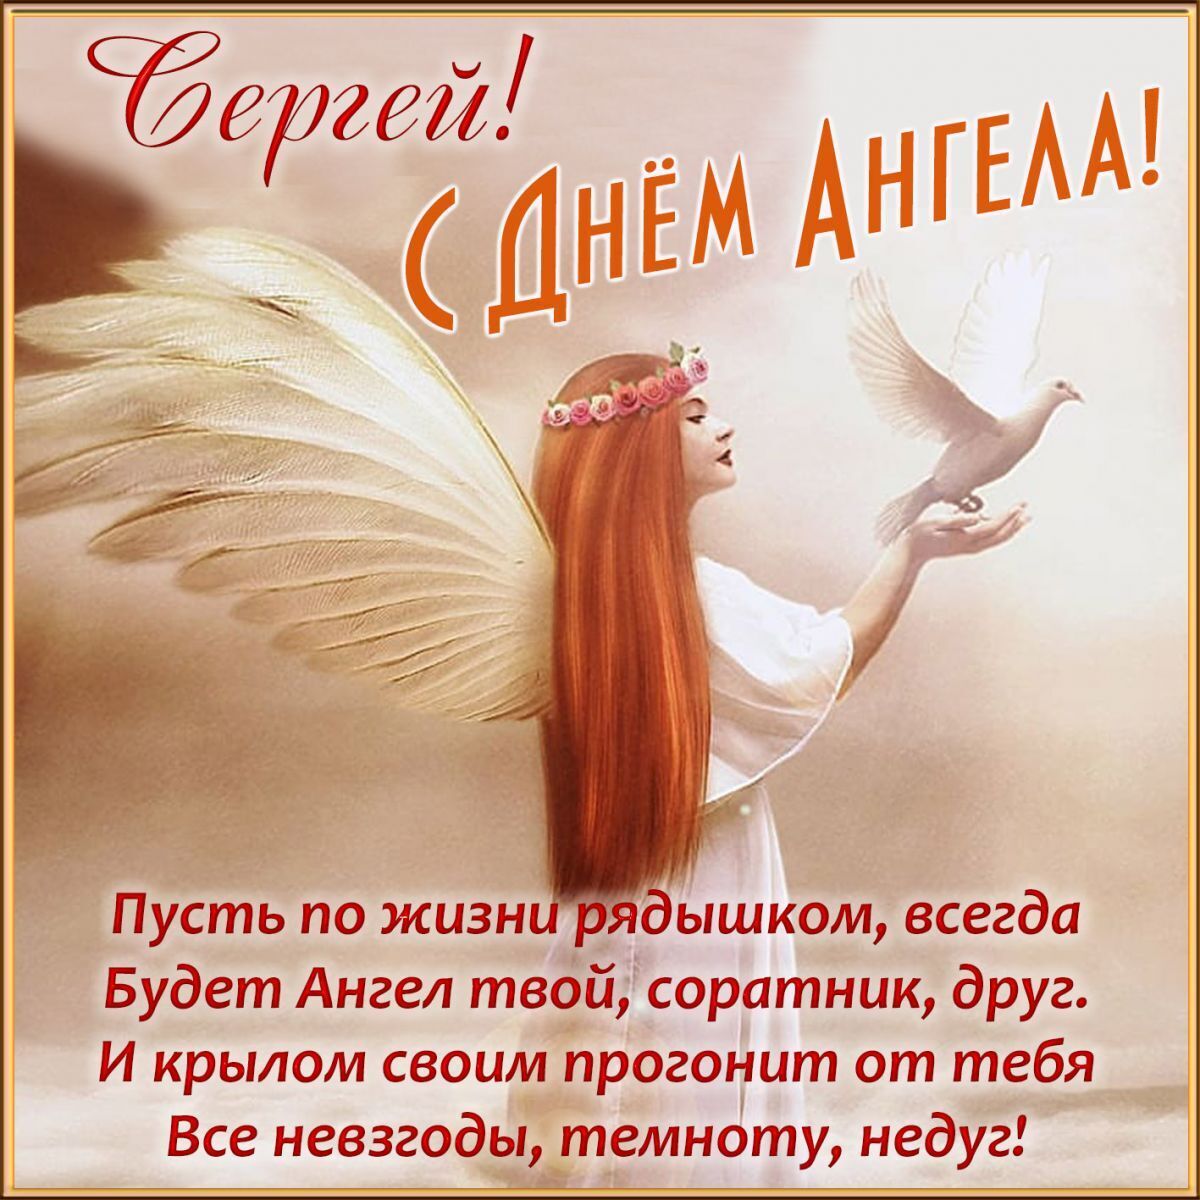 День ангела Сергея 2020 - поздравления, пожелания, стихи, видео, картинки